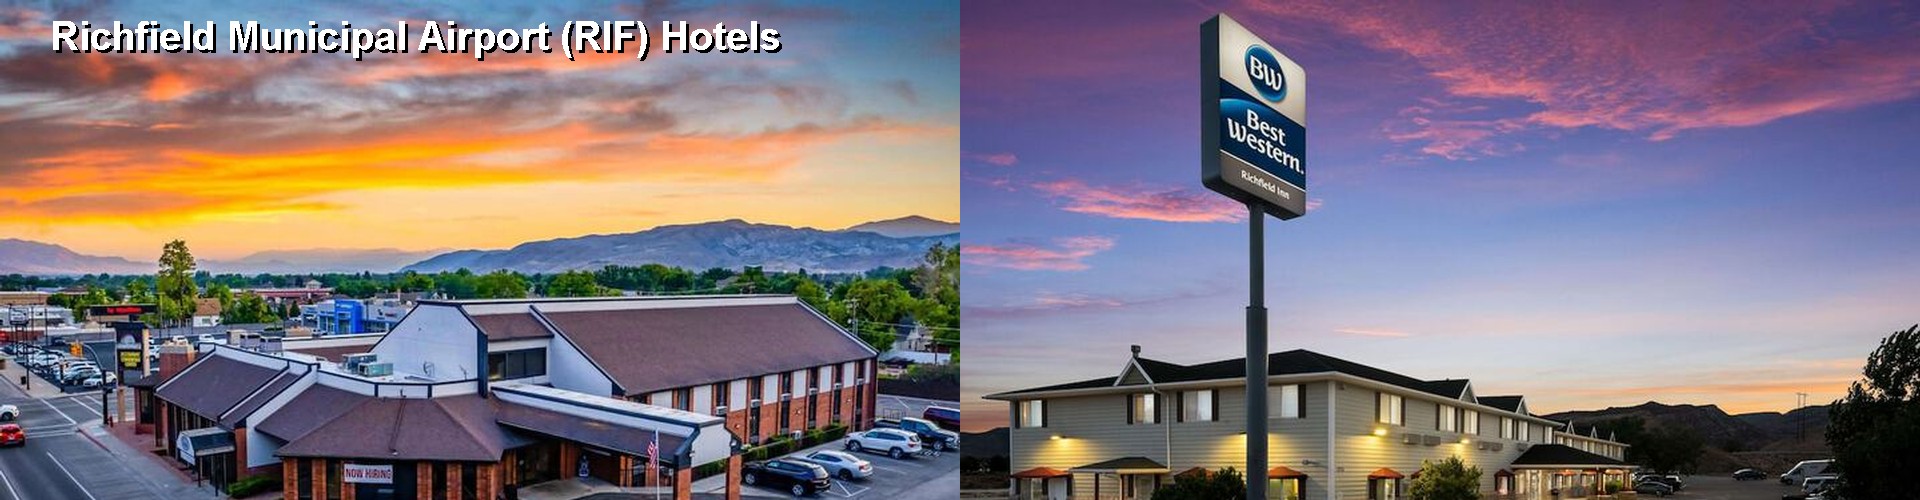 5 Best Hotels near Richfield Municipal Airport (RIF)